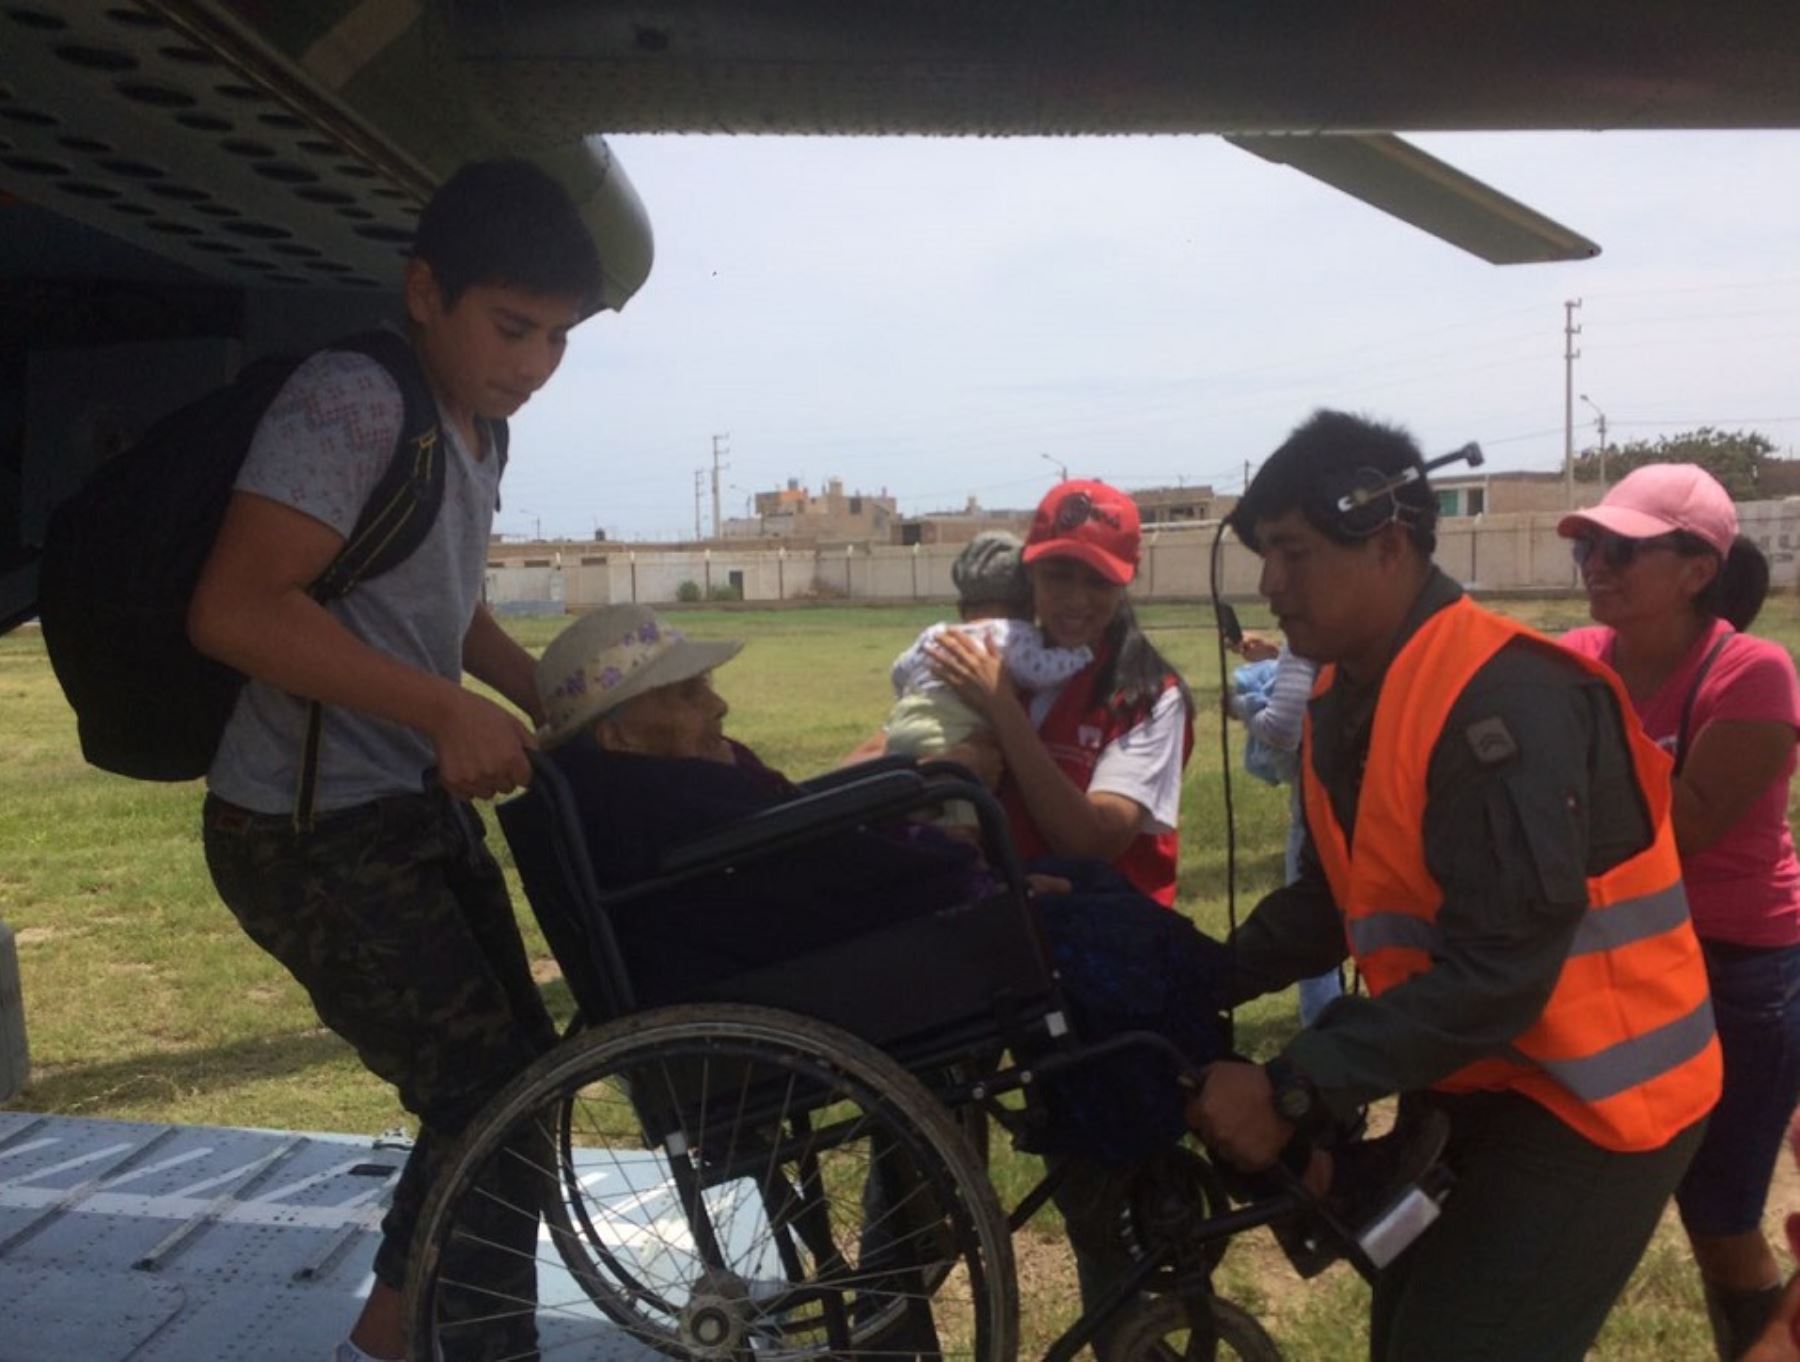 El reforzamiento del puente aéreo para resguardar la vida de los damnificados por los desastres en la región Áncash y distribuir ayuda humanitaria, permitió rescatar a más personas y trasladarlas hacia Lima, informó el Ministerio de Justicia y Derechos Humanos.